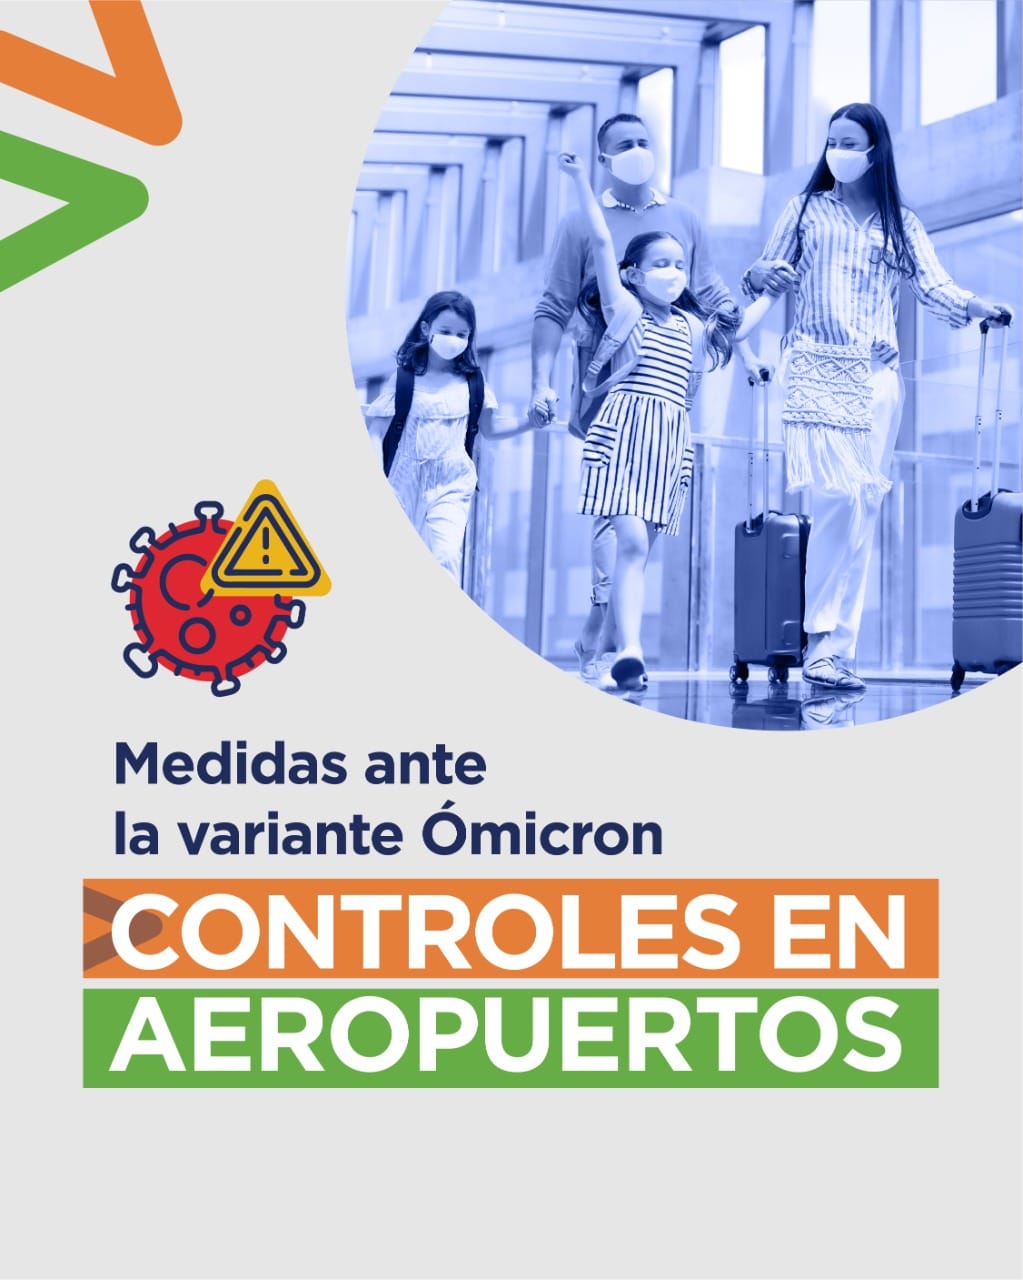 Medidas ante la variante Ómicron – Controles en aeropuertos